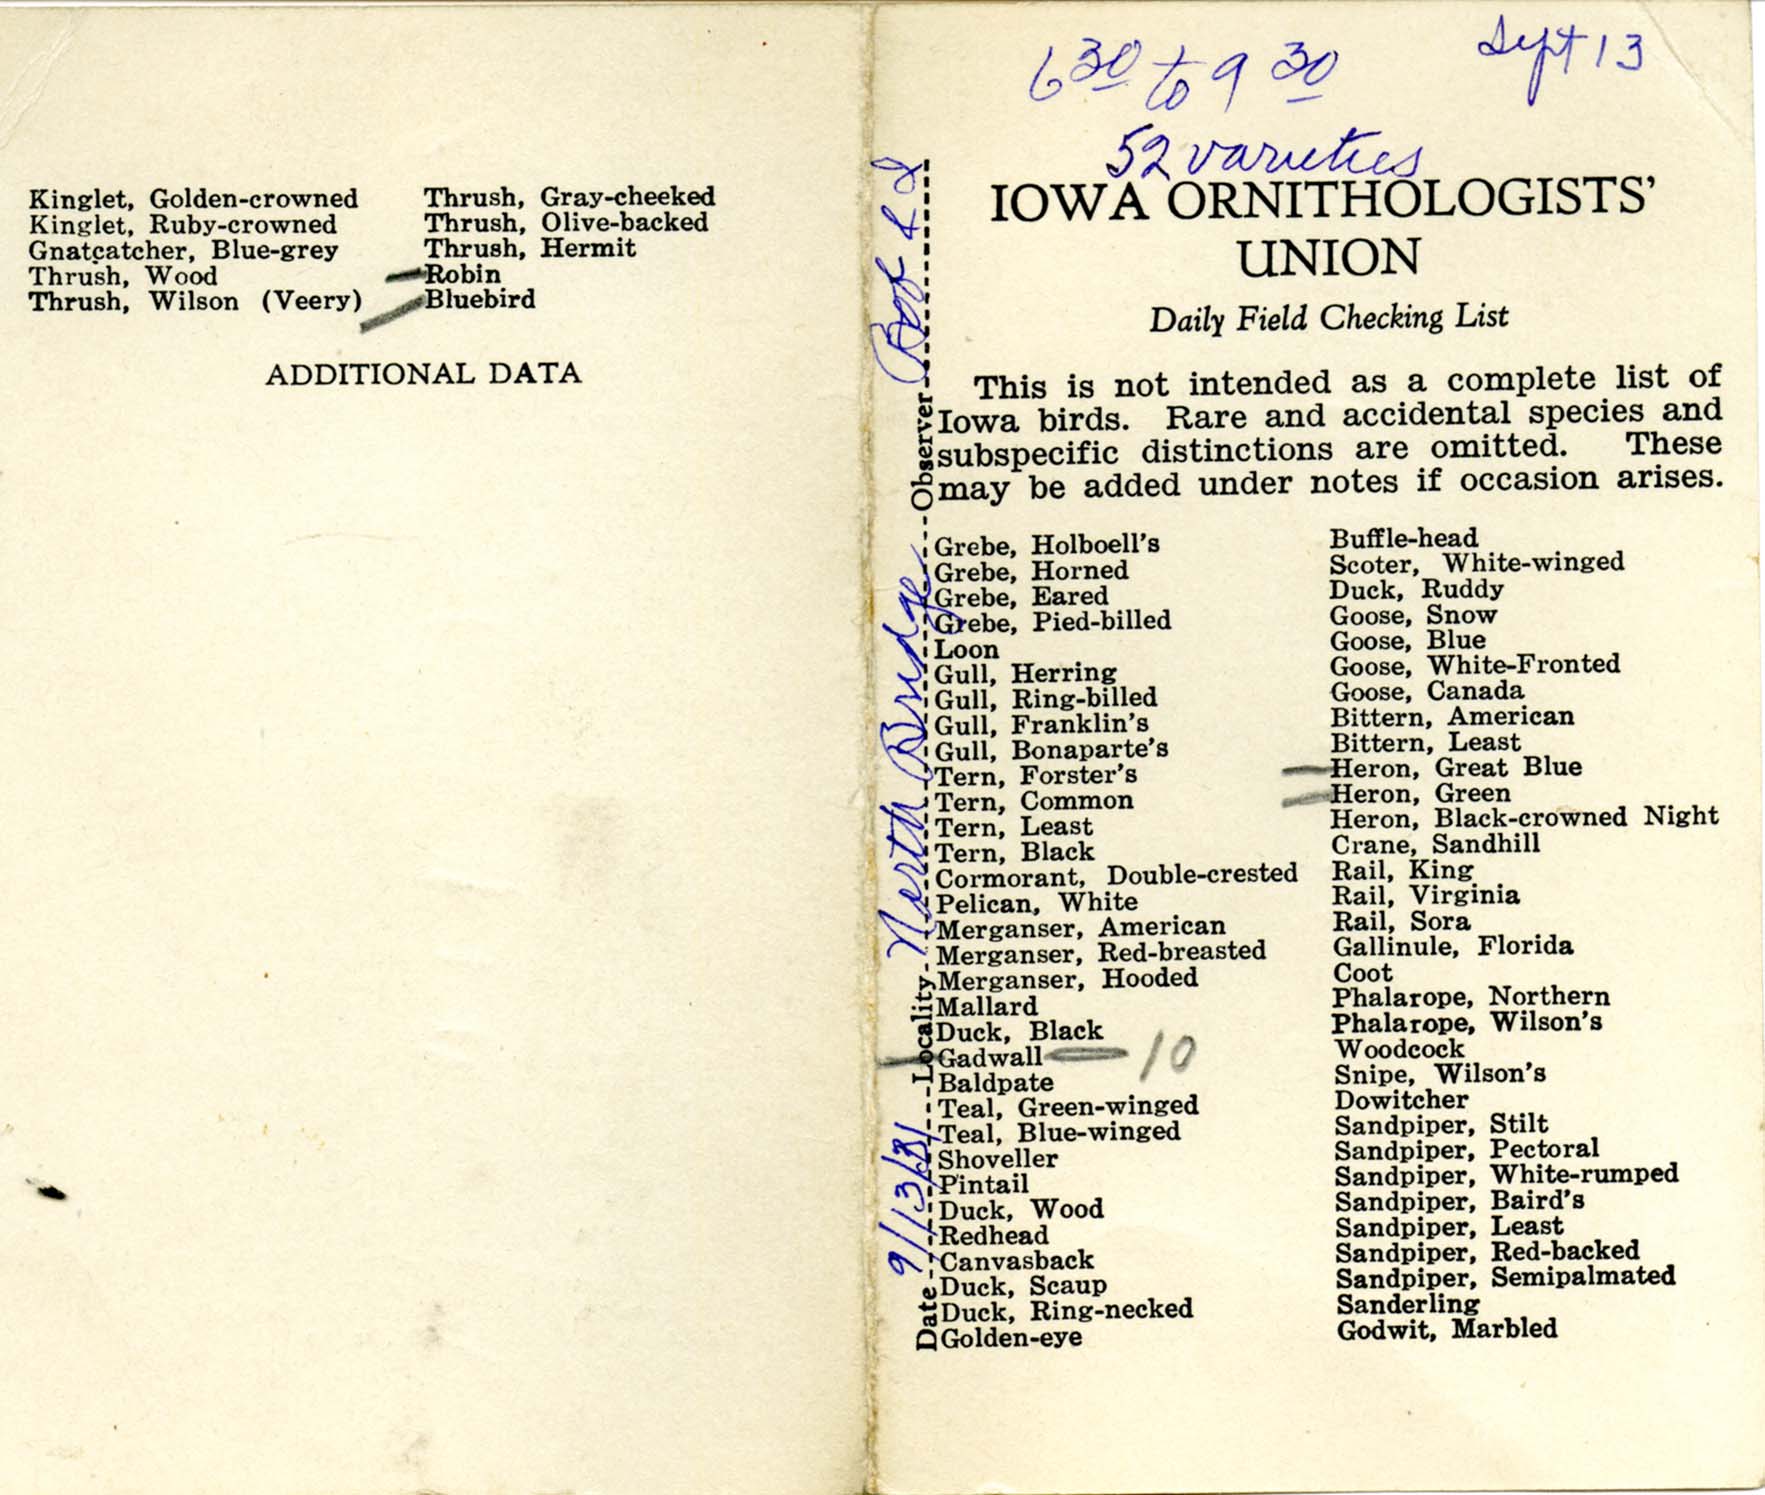 Daily field checking list, Walter Rosene, September 13, 1931